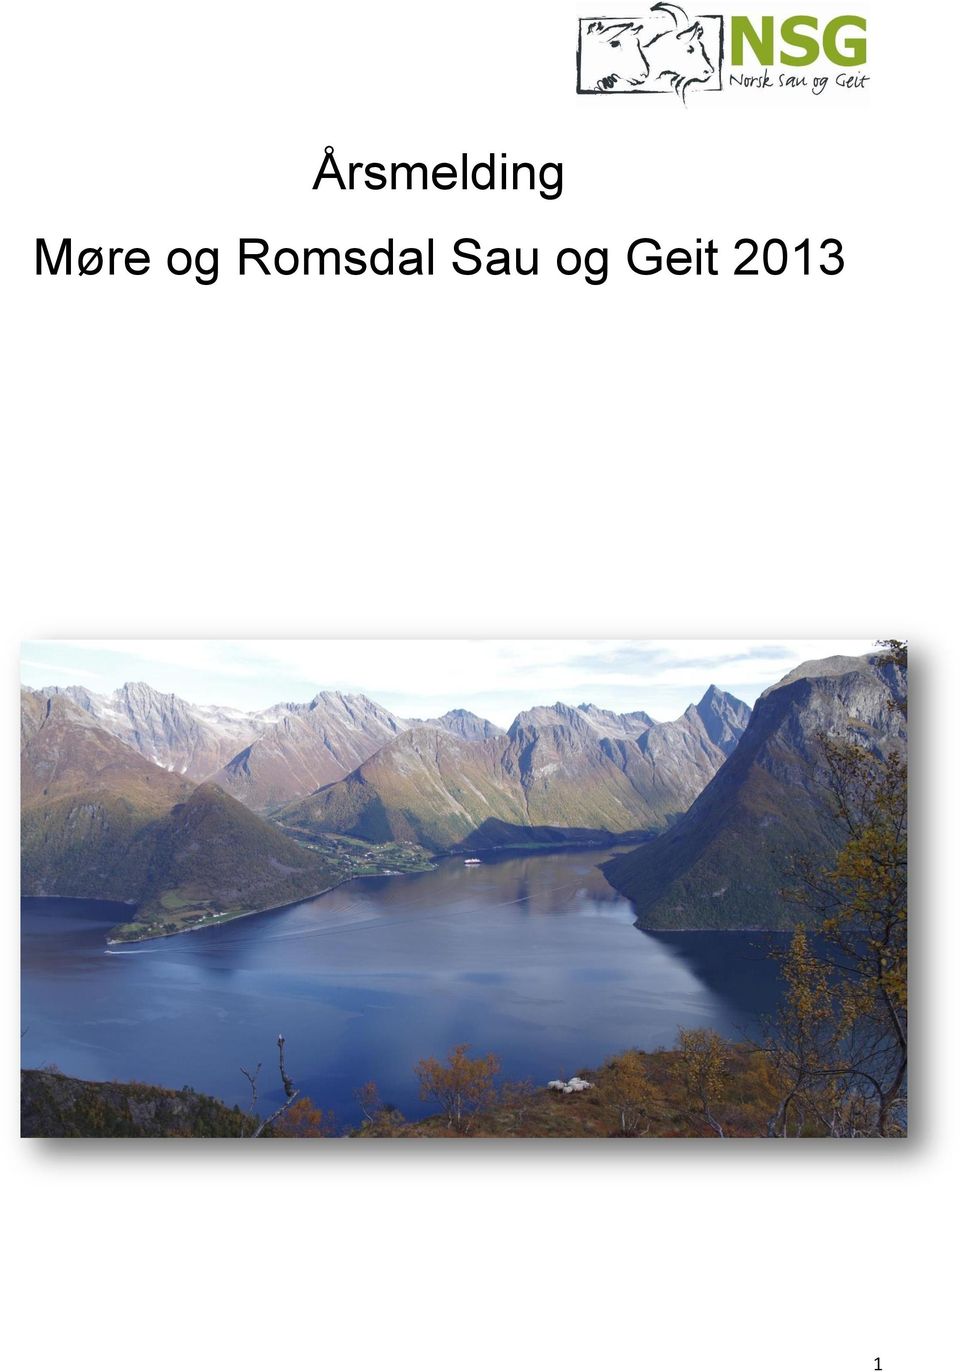 Romsdal Sau